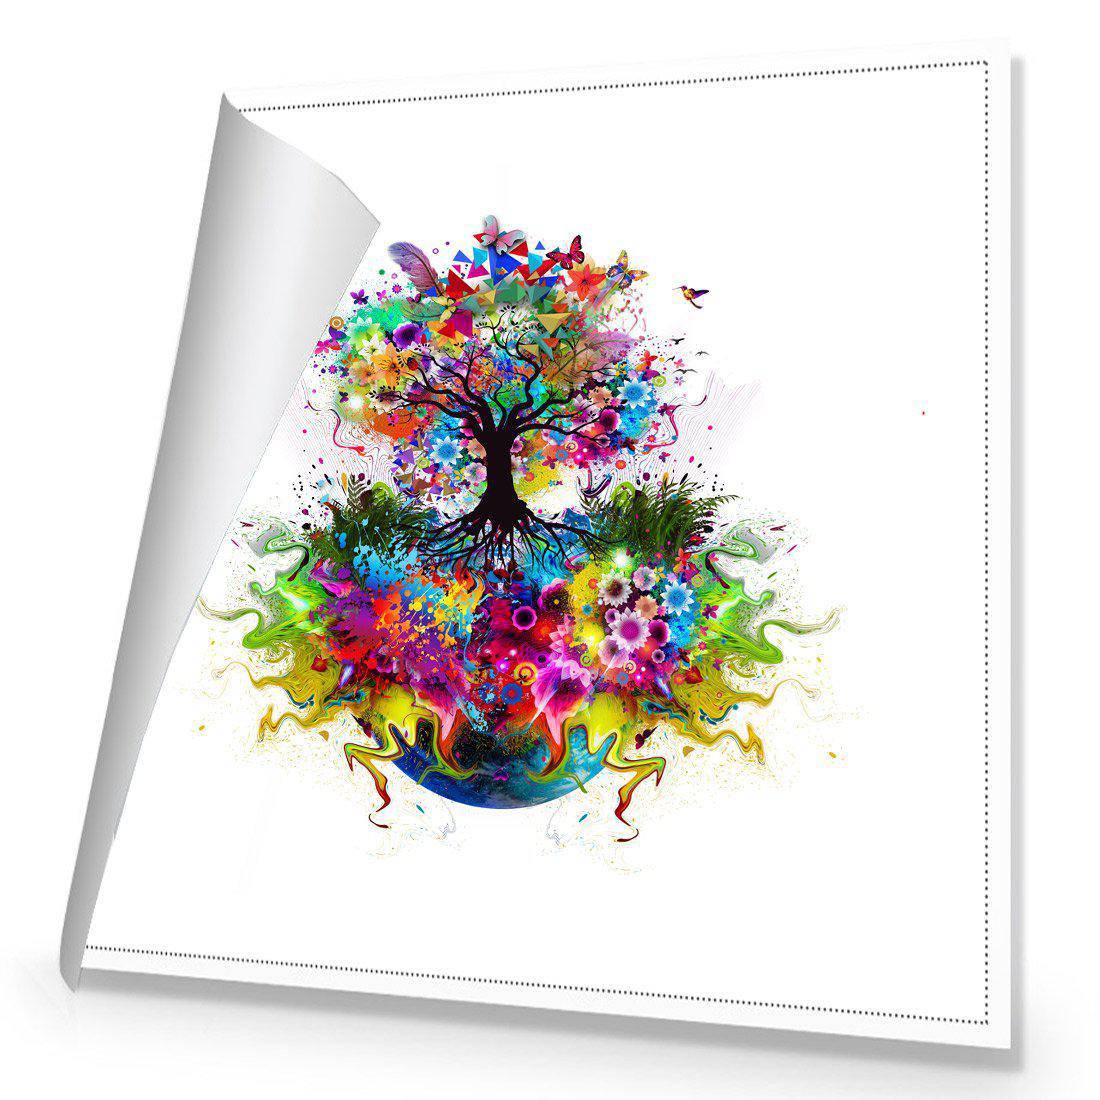 Flower Power Canvas Art-Canvas-Wall Art Designs-30x30cm-Rolled Canvas-Wall Art Designs